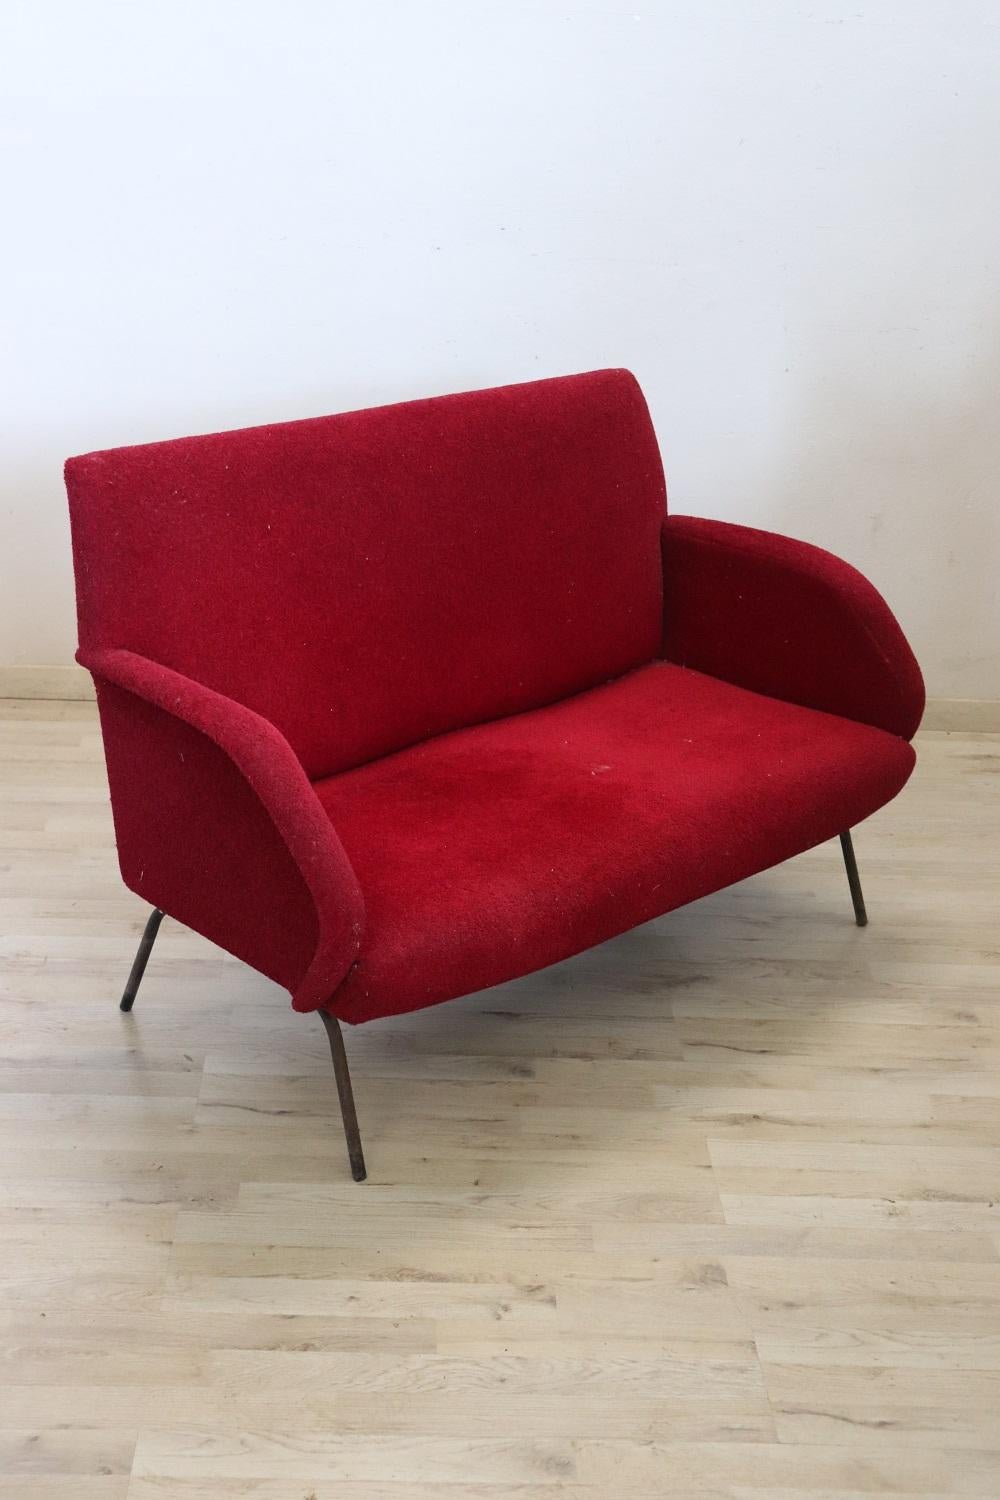 Charmant canapé design italien des années 1950. Structure métallique avec padding en éponge et revêtement en laine bouclée rouge. Le canapé présente une ligne parfaite dans le style des années 1950 qui rappelle le design de Gigi Radice. Le canapé